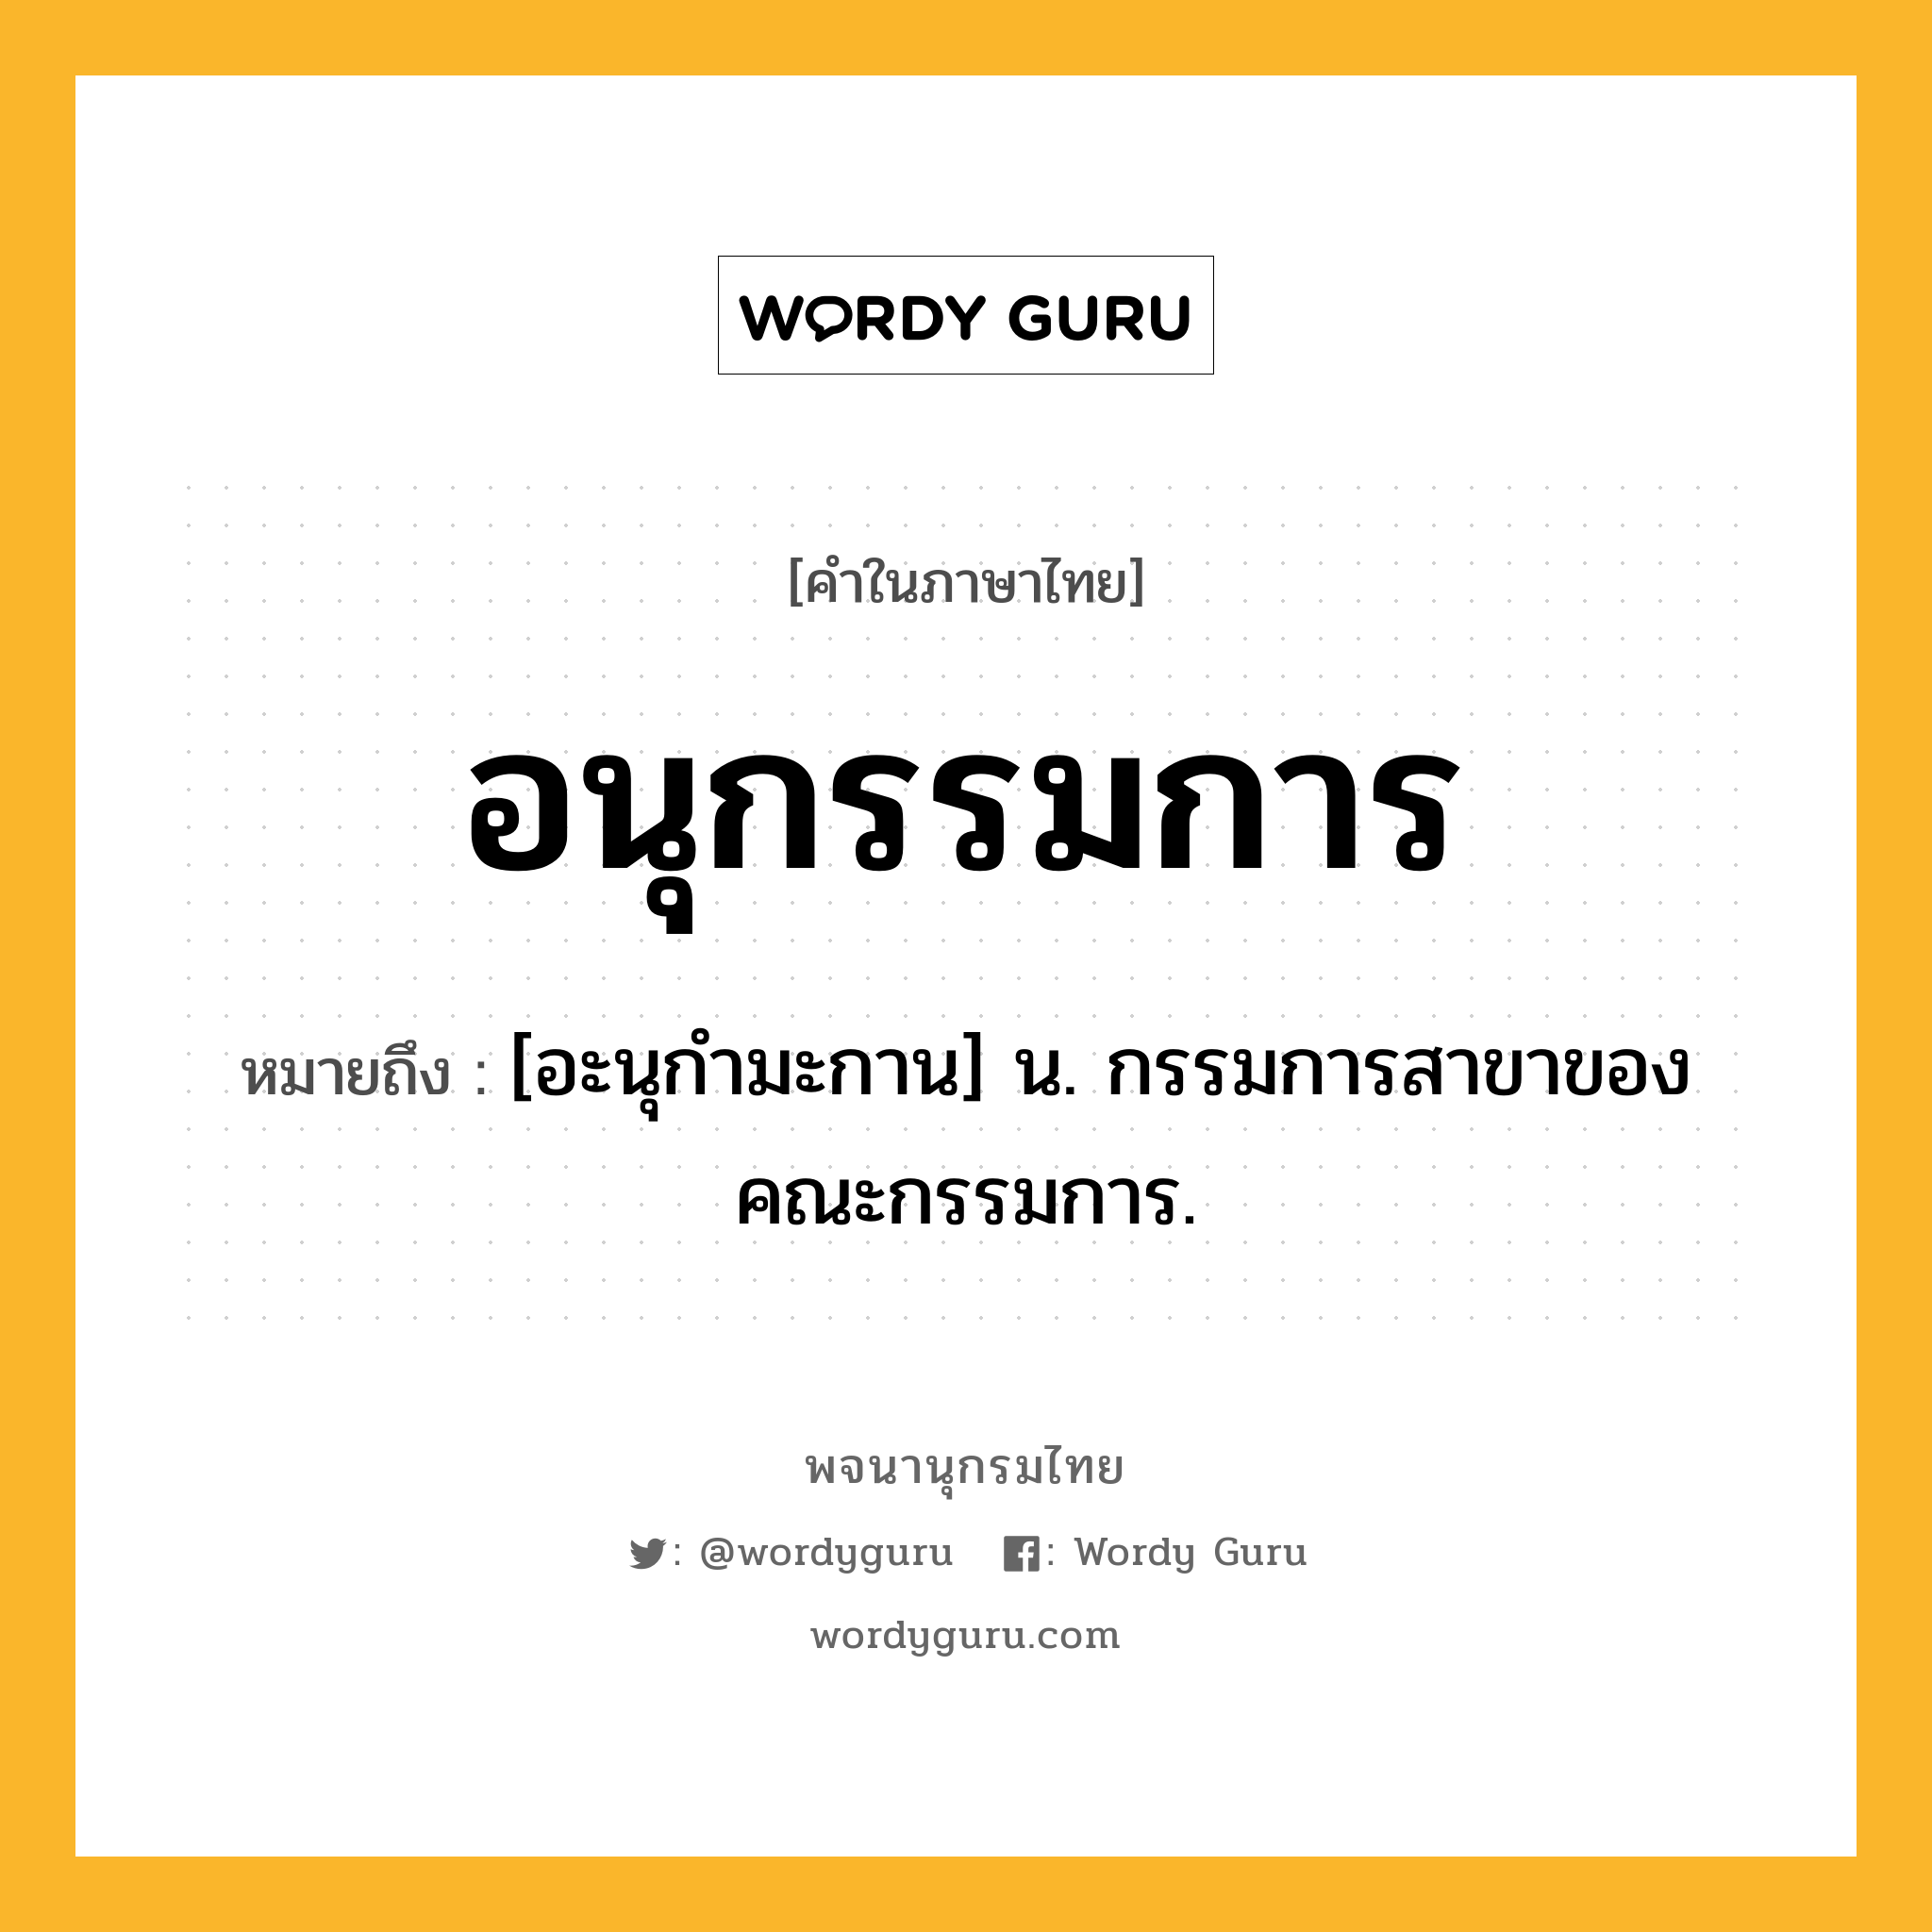 อนุกรรมการ ความหมาย หมายถึงอะไร?, คำในภาษาไทย อนุกรรมการ หมายถึง [อะนุกํามะกาน] น. กรรมการสาขาของคณะกรรมการ.